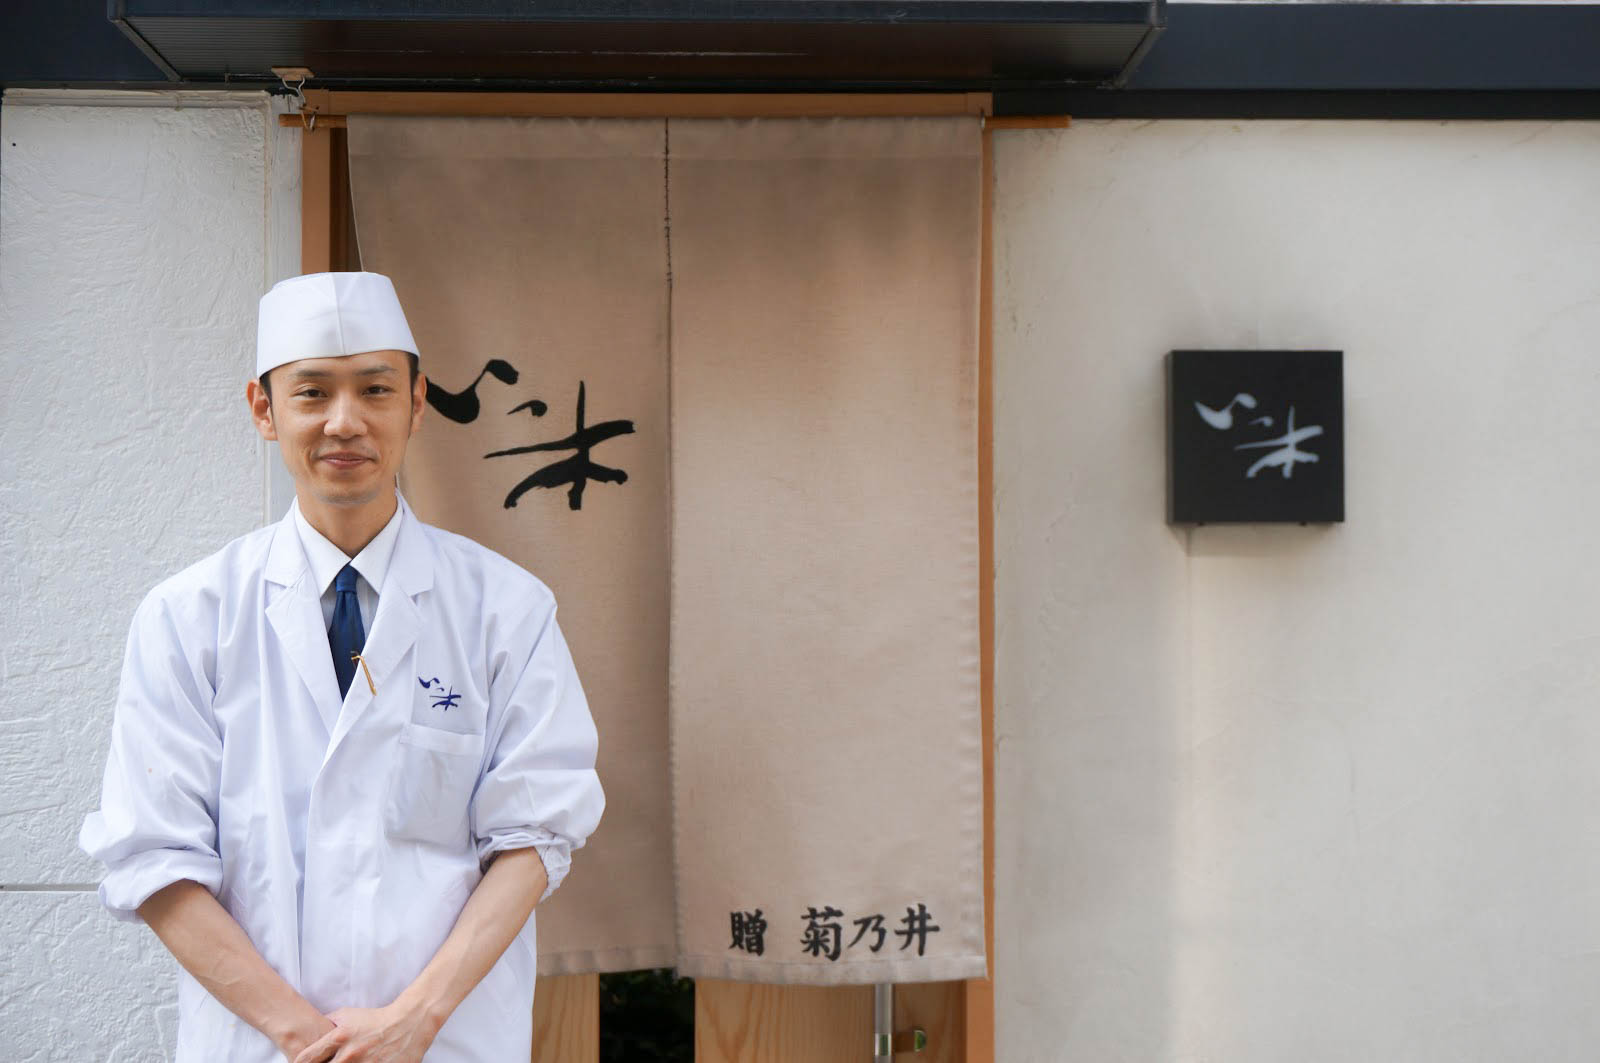 【まちなかストーリー】懐石料理 いっ木 一木敏哉さん 第1回「菊乃井さんで修行して浜松で起業したきっかけ」